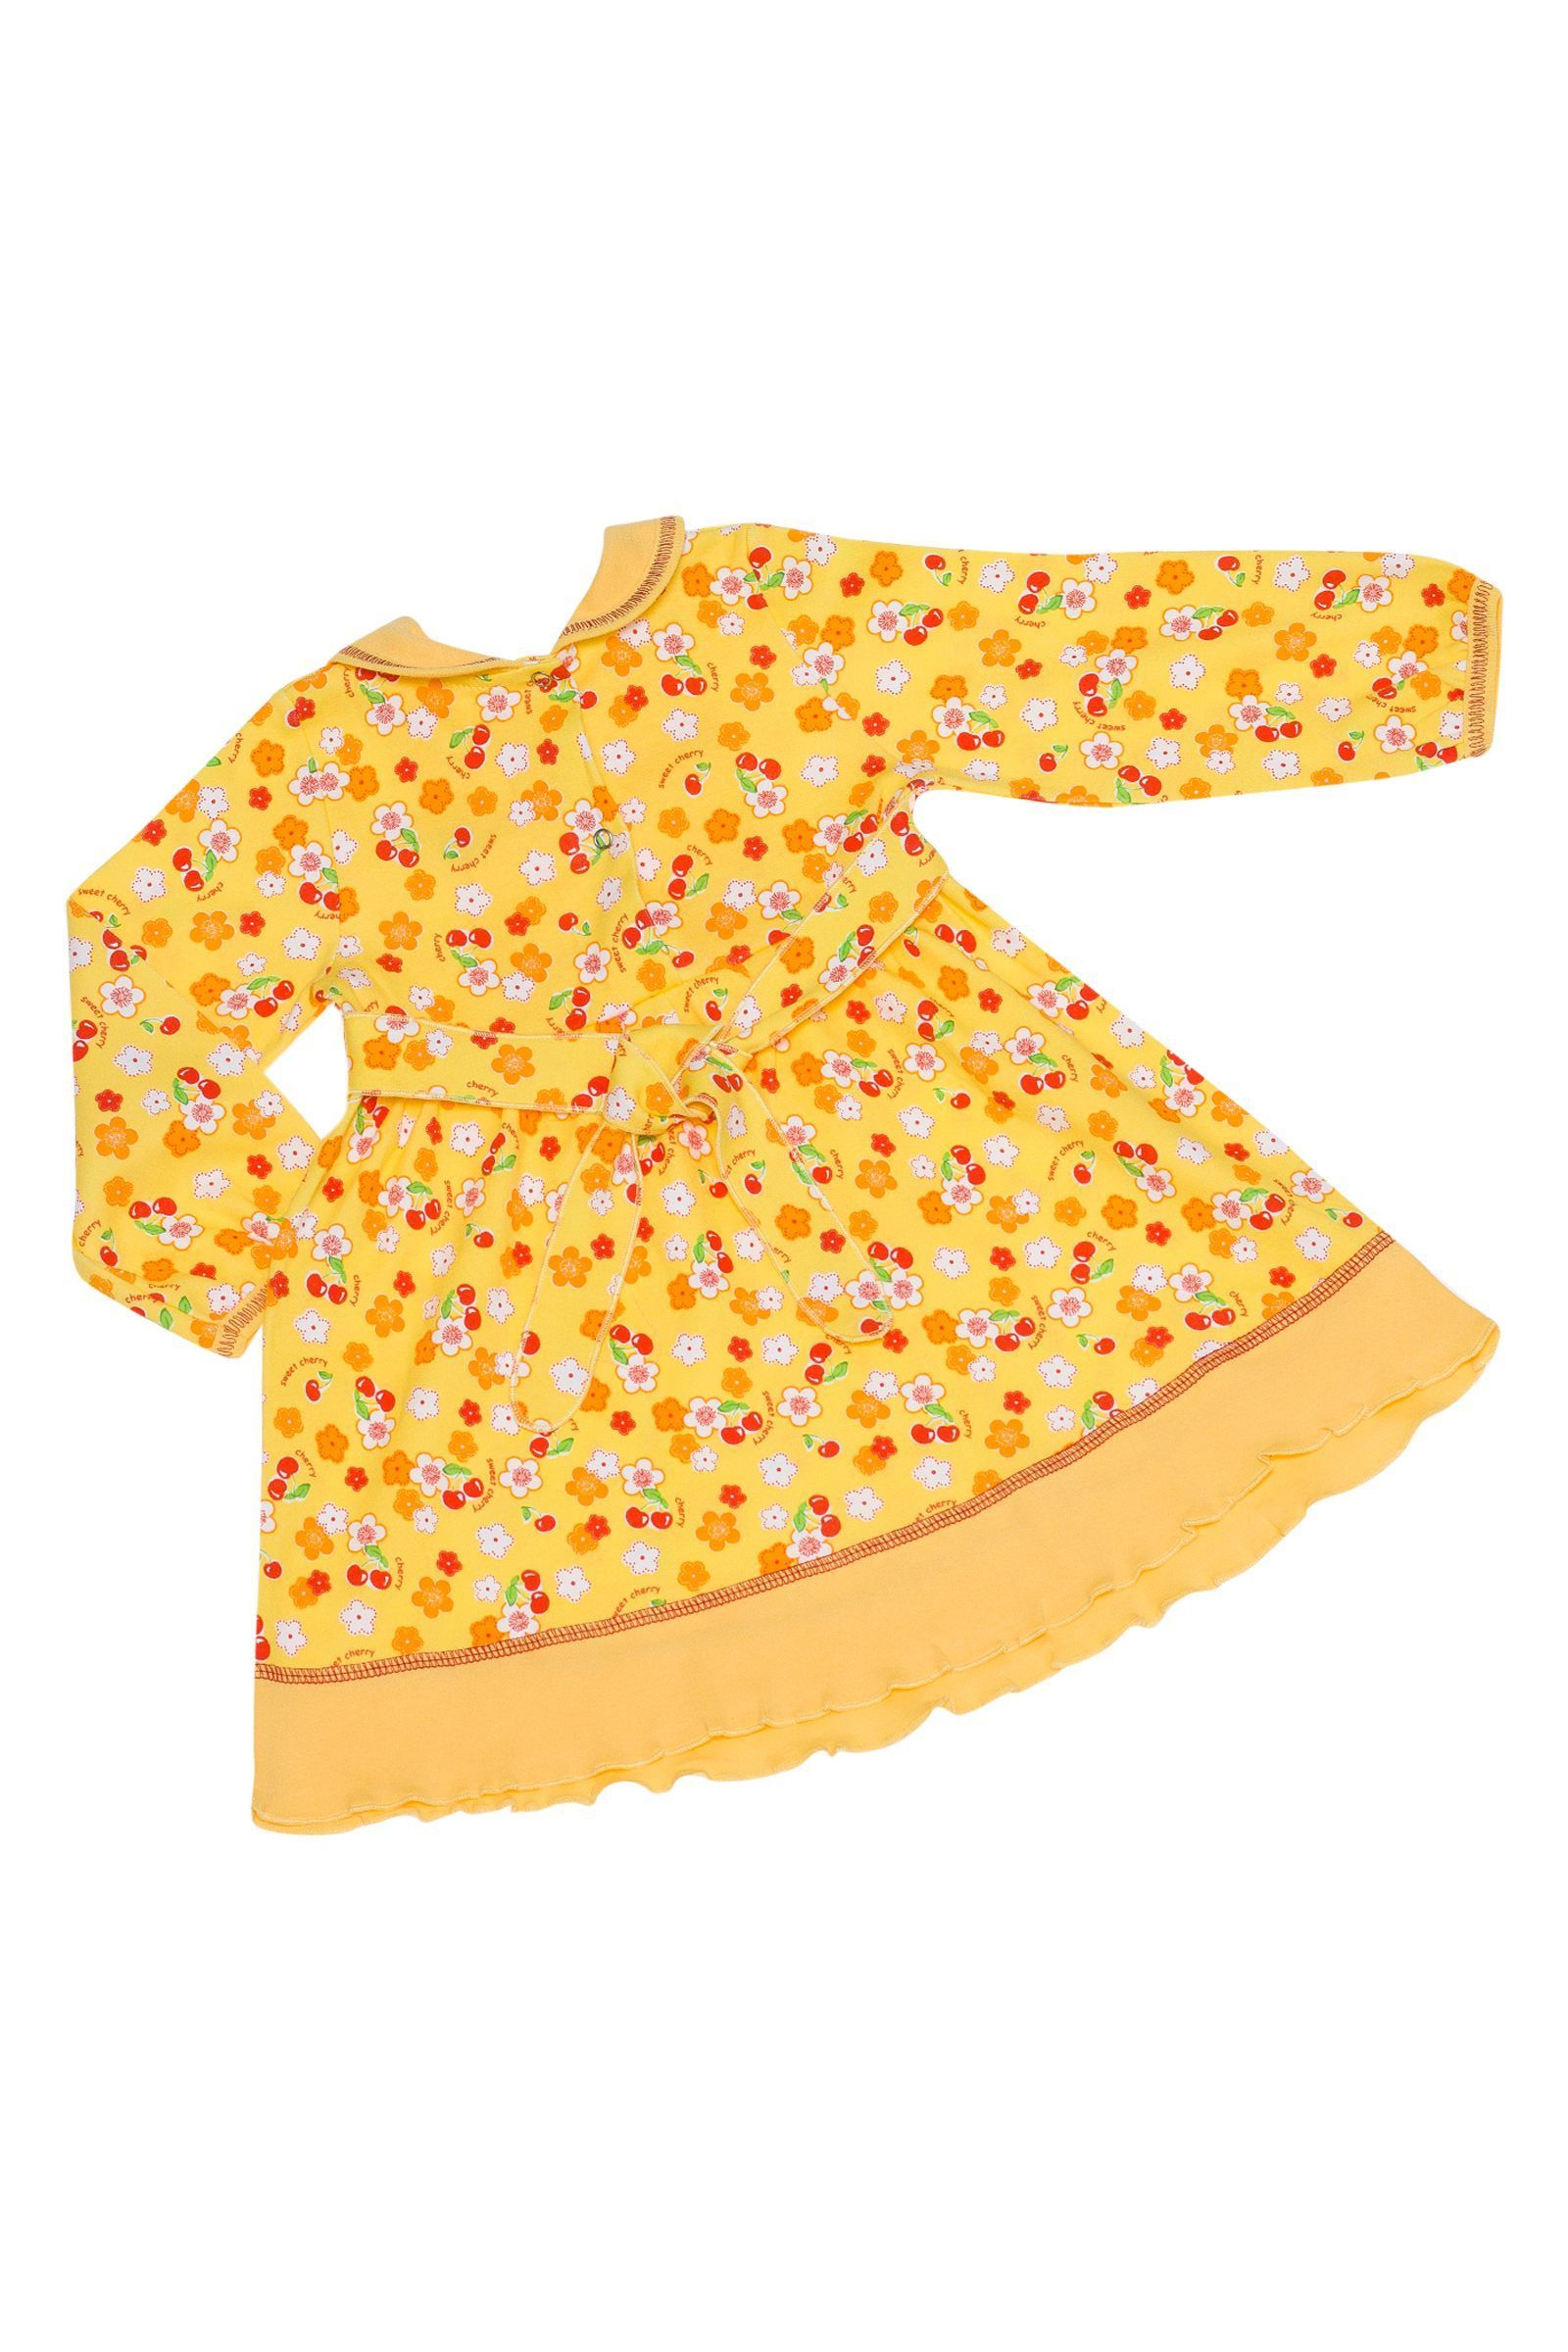 Платье-ПЛ01-609 оптом от производителя детской одежды 'Алёна'